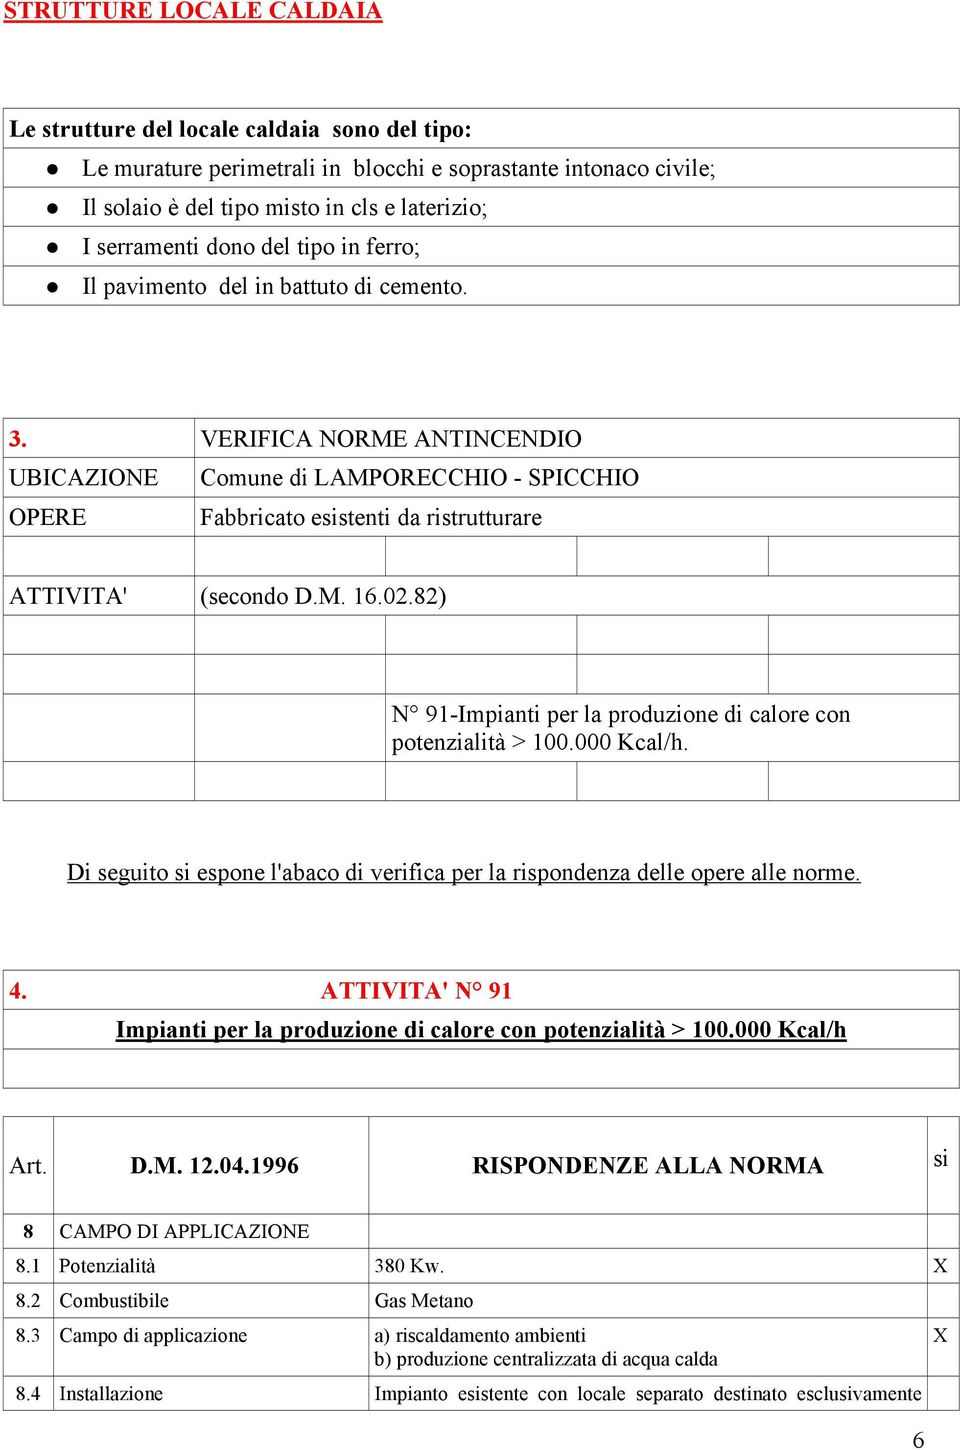 VERIFICA NORME ANTINCENDIO UBICAZIONE Comune di LAMPORECCHIO - SPICCHIO OPERE Fabbricato esistenti da ristrutturare ATTIVITA' (secondo D.M. 16.02.